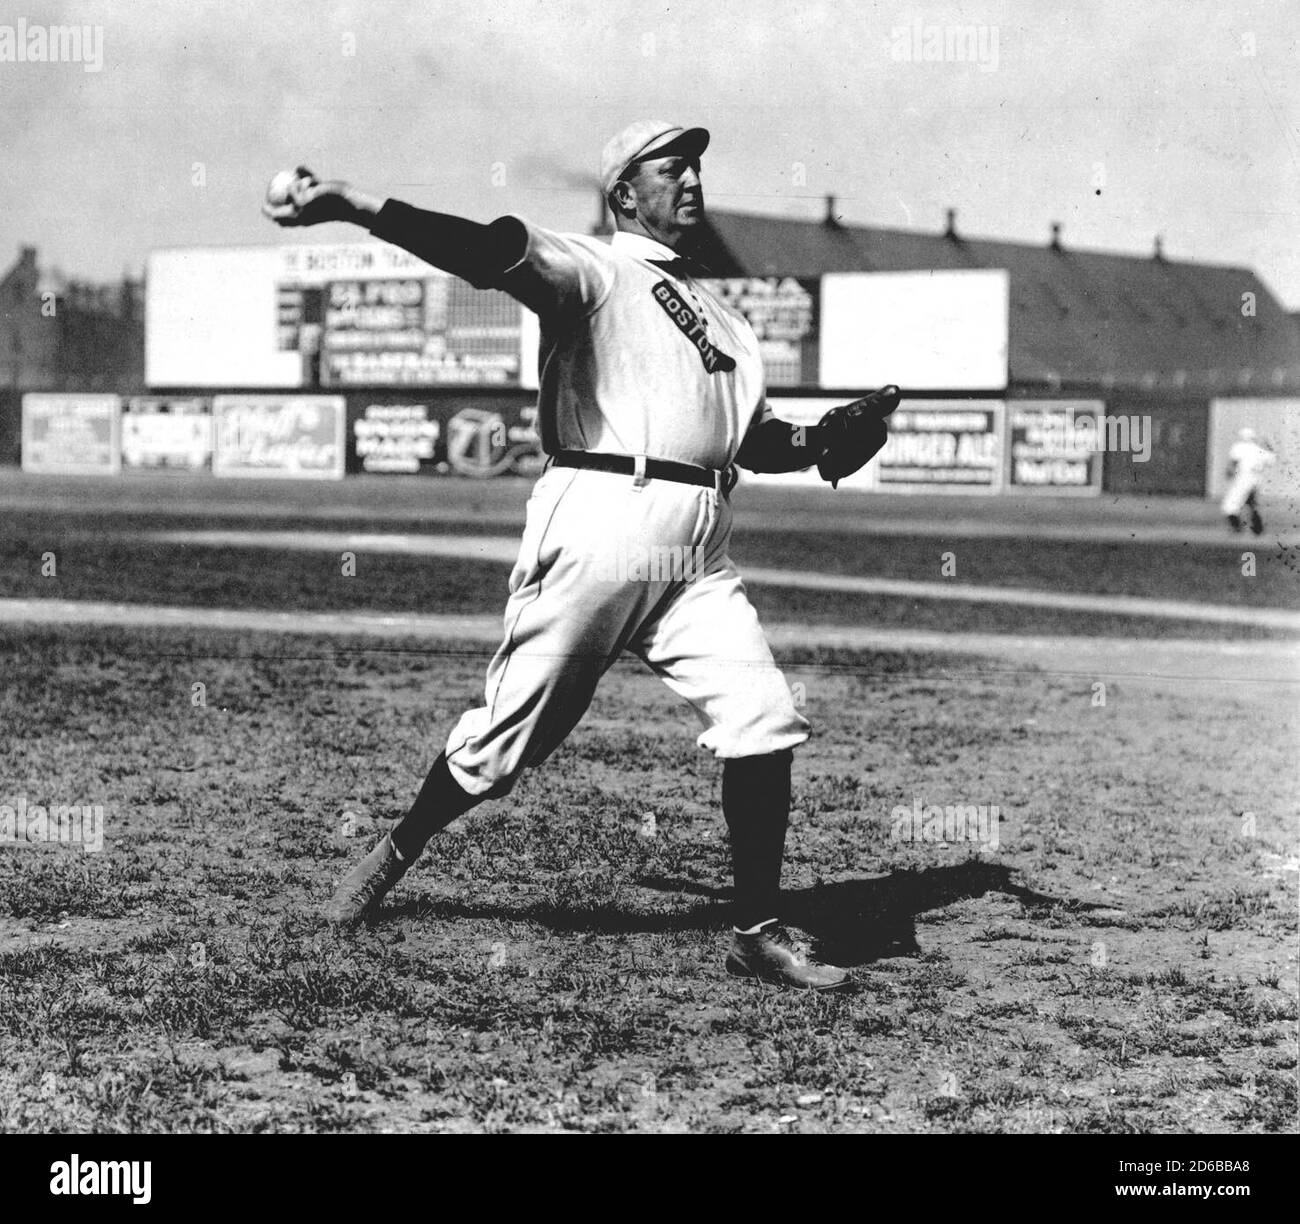 CY Young, qui détient de nombreuses notes de carrière de la ligue majeure, y compris les victoires et les gains marqués, ainsi que les pertes, en 1908. Les prix annuels de la MLB pour le meilleur lanceur de chaque ligue sont nommés pour Young. Banque D'Images